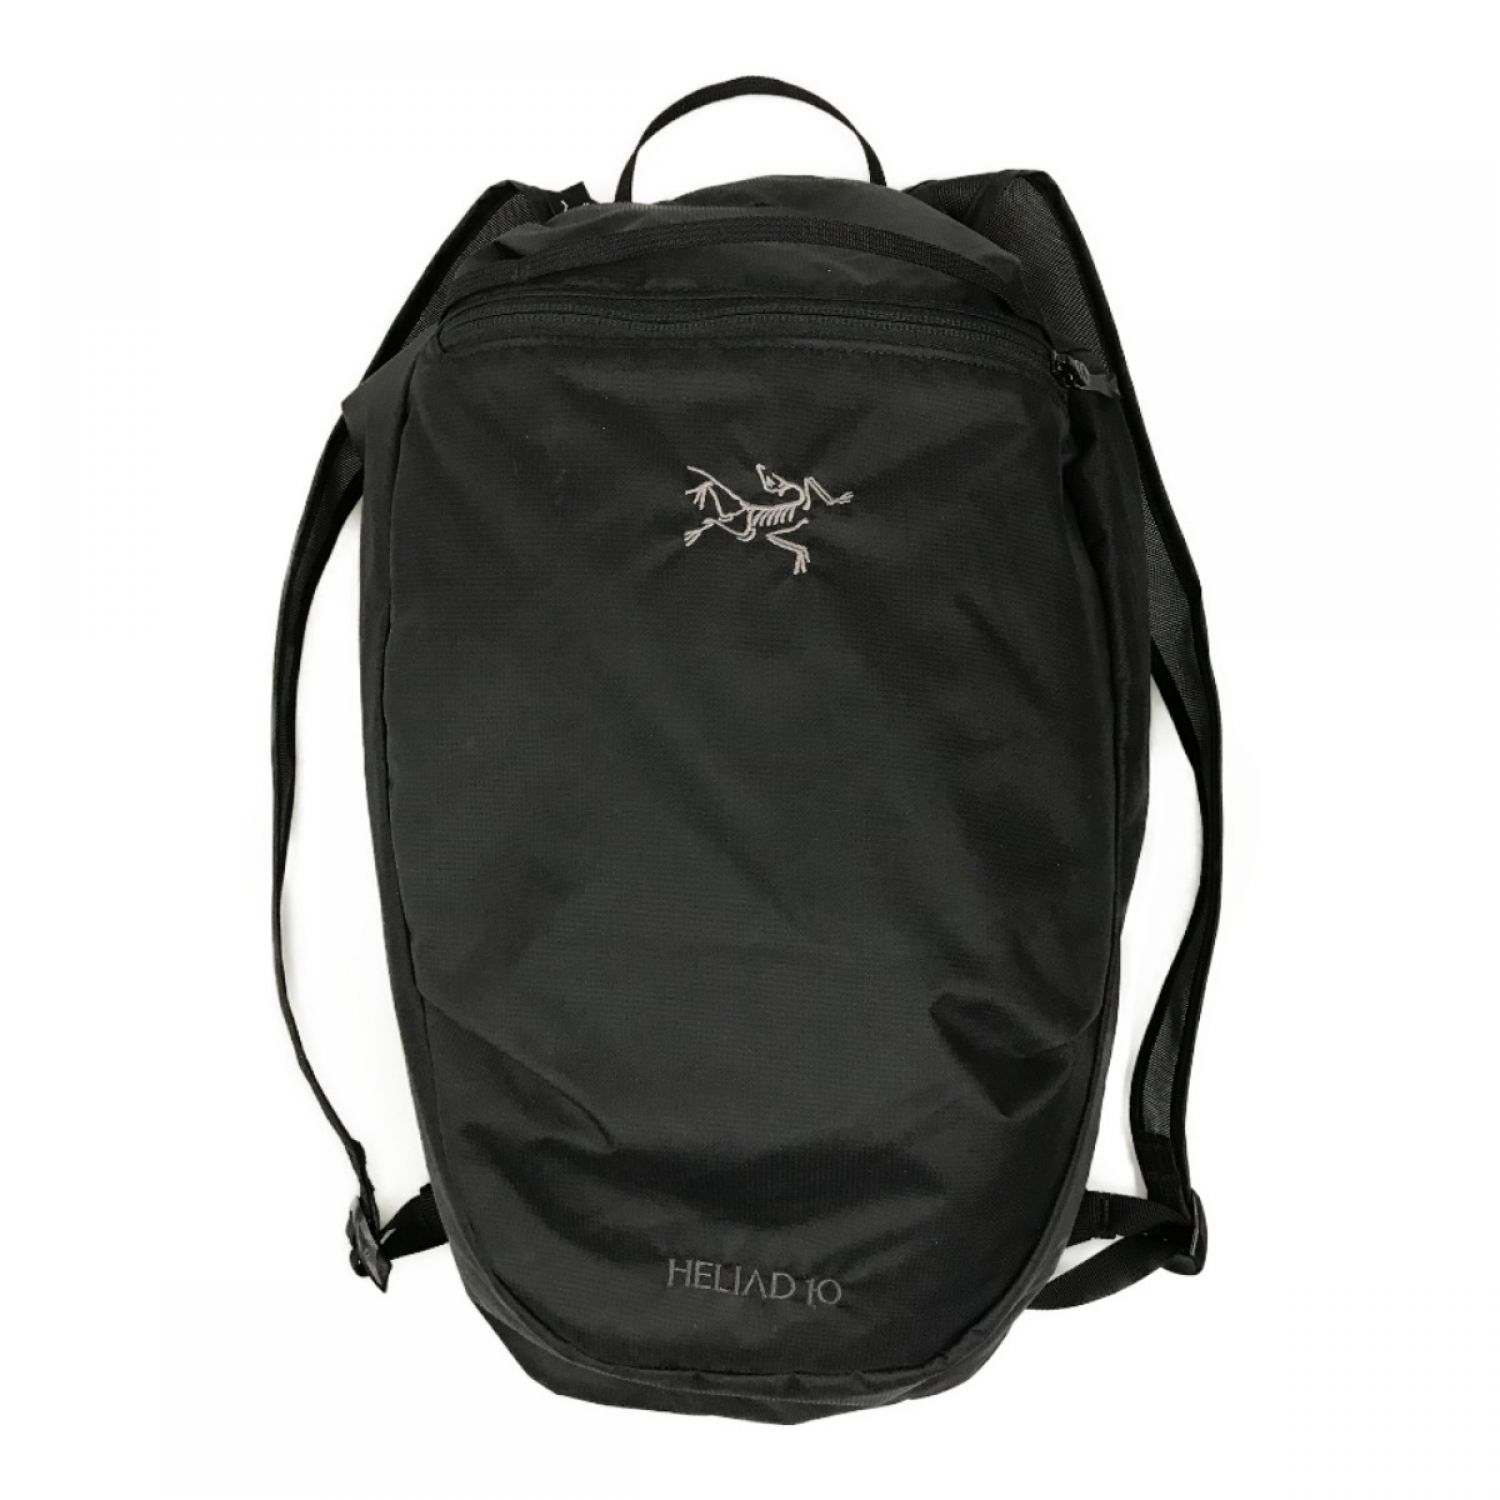 heliad10L backpack - 登山用品